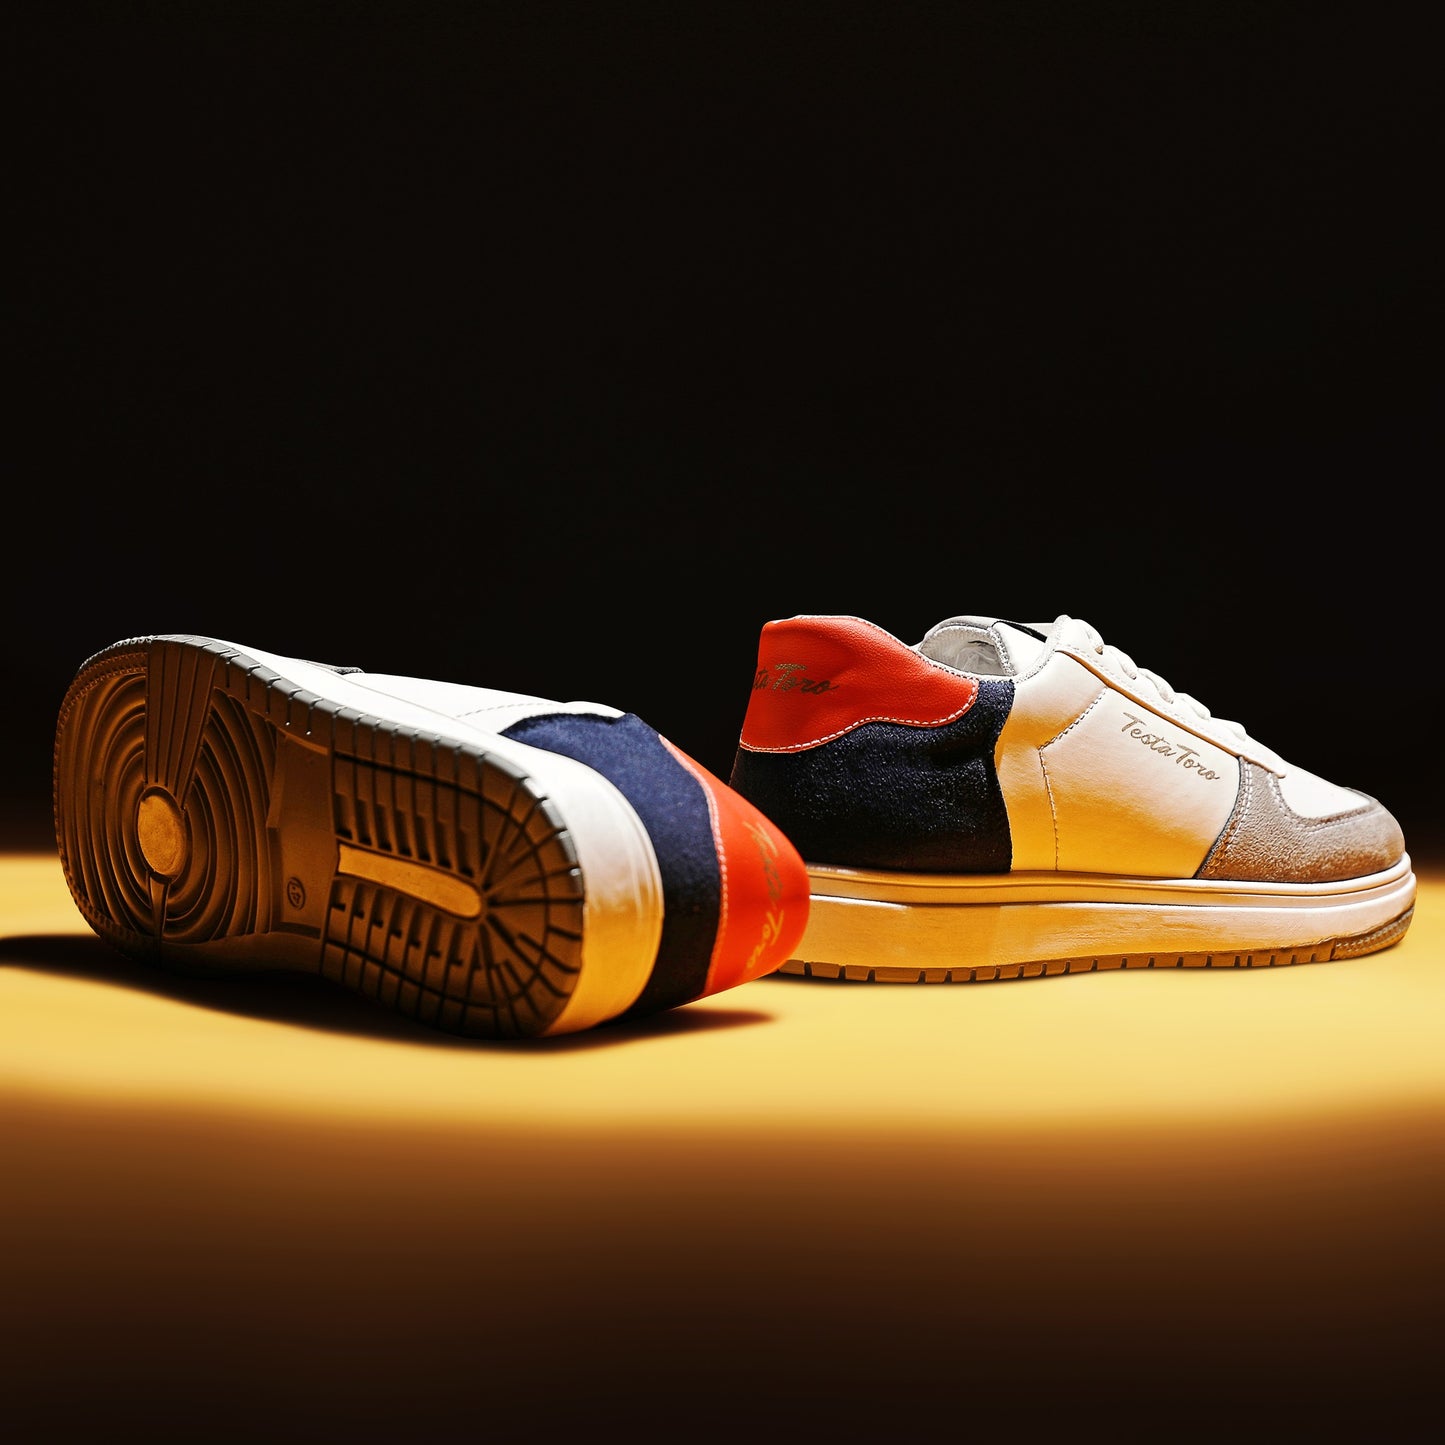 حذاء كاجوال عام علي الموضه للحياة اليومية من تيستا تورو x10